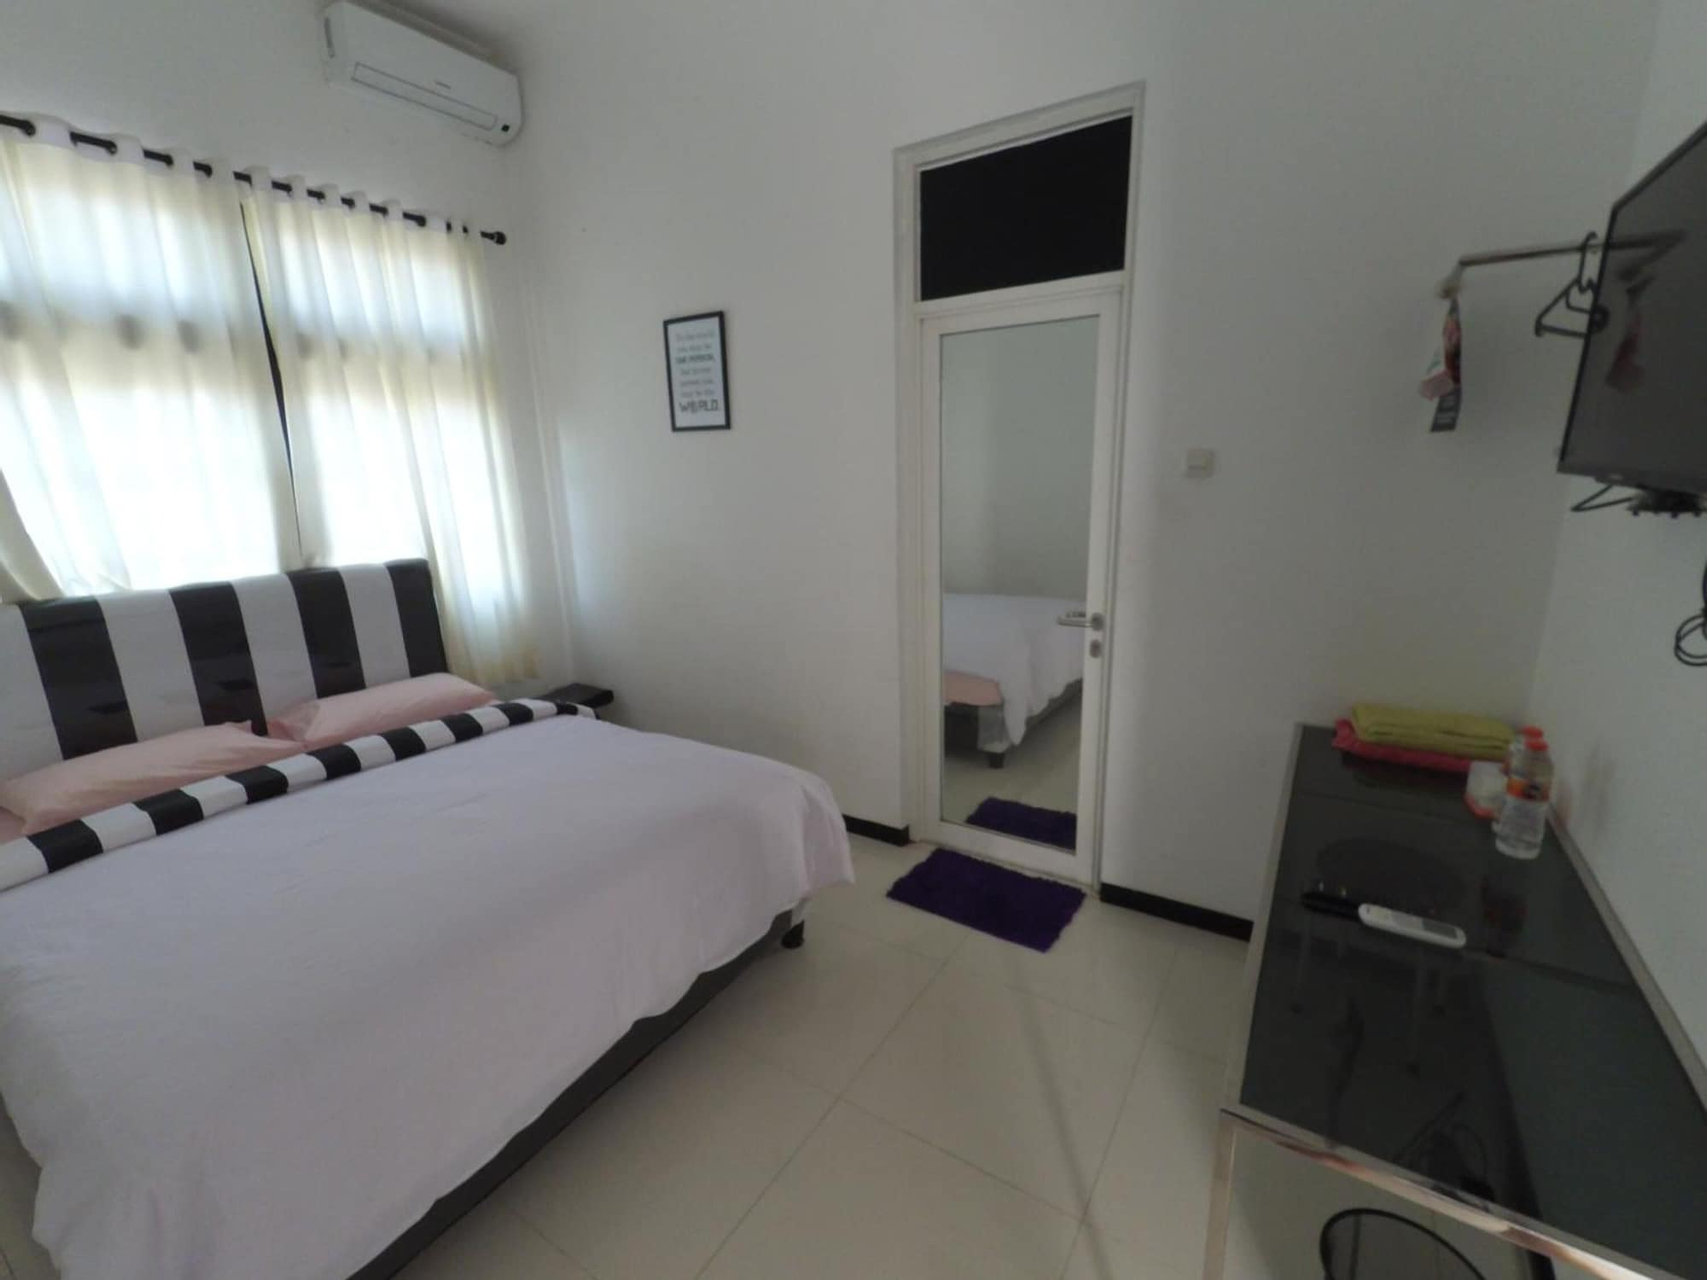 Bedroom 4, Mess Inn Semarang, Semarang